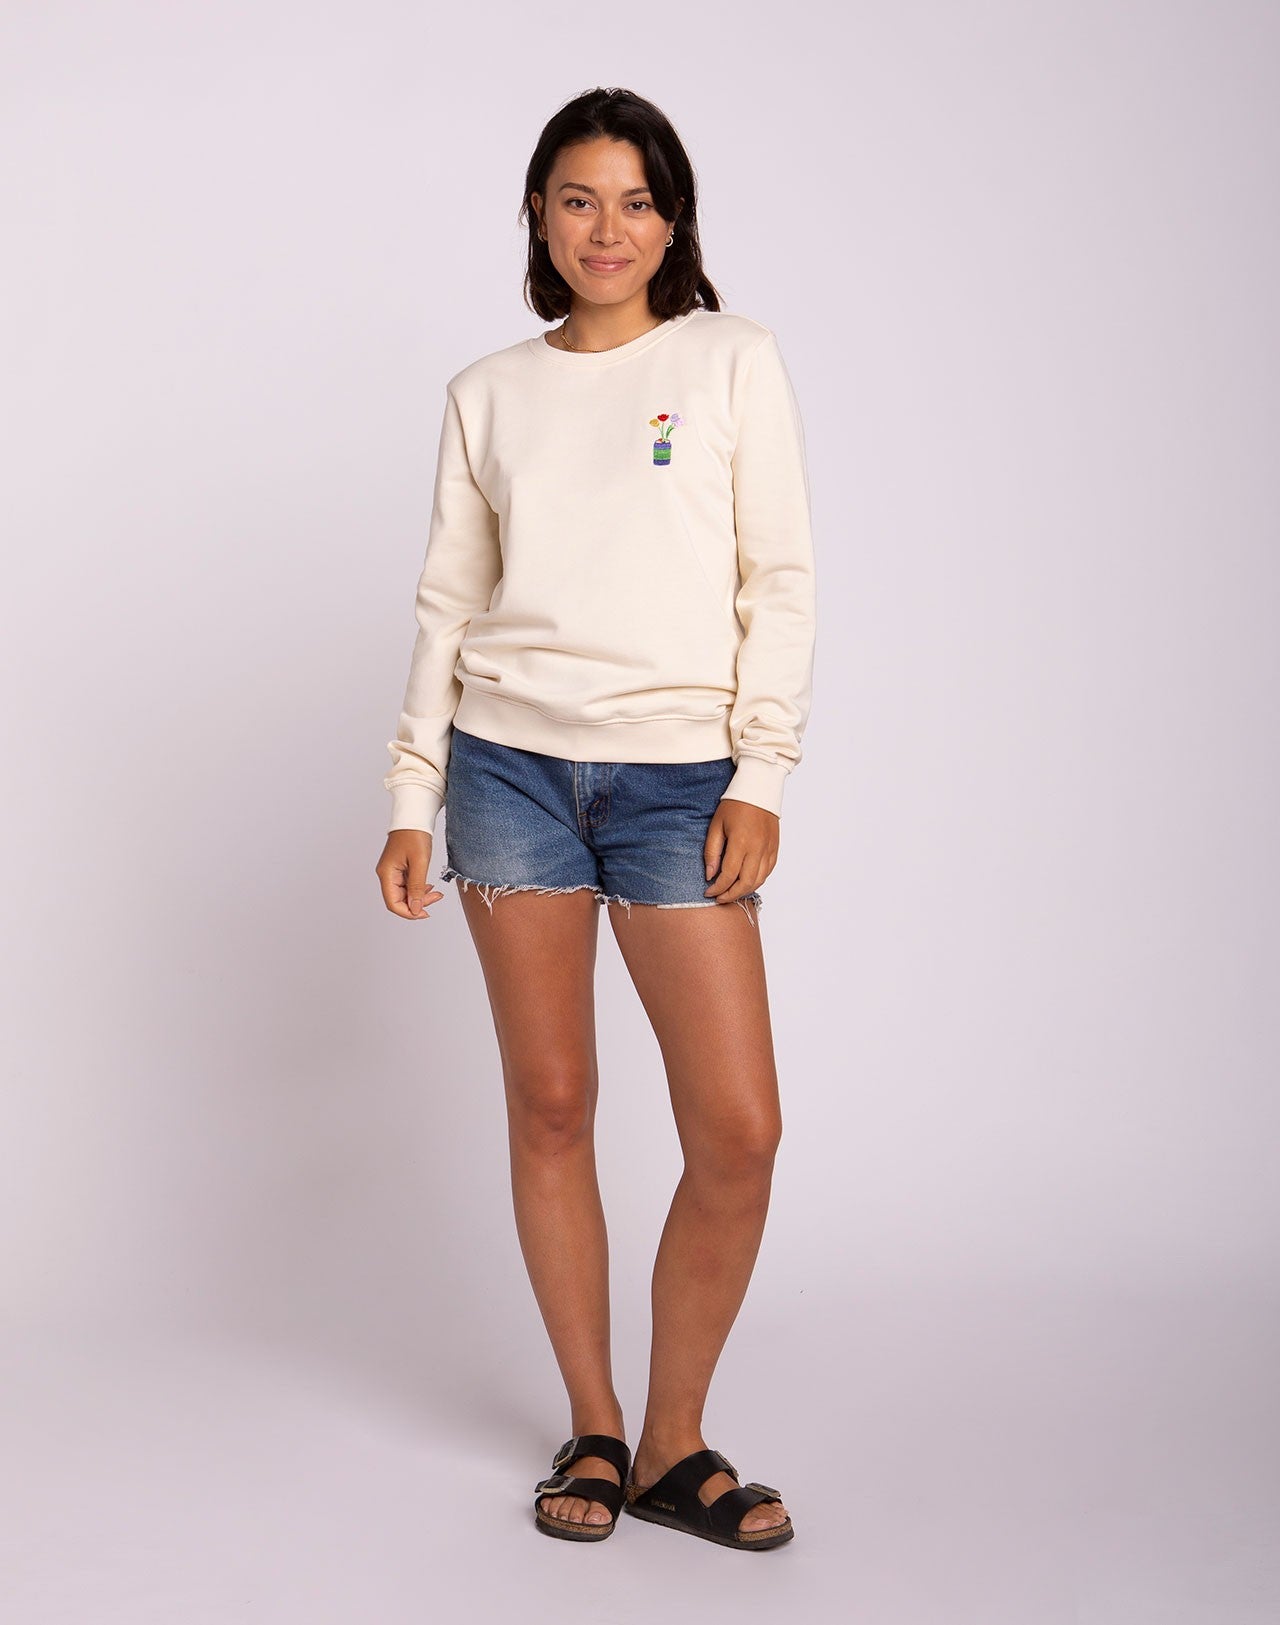 Women's Olow Sweatshirt - Can